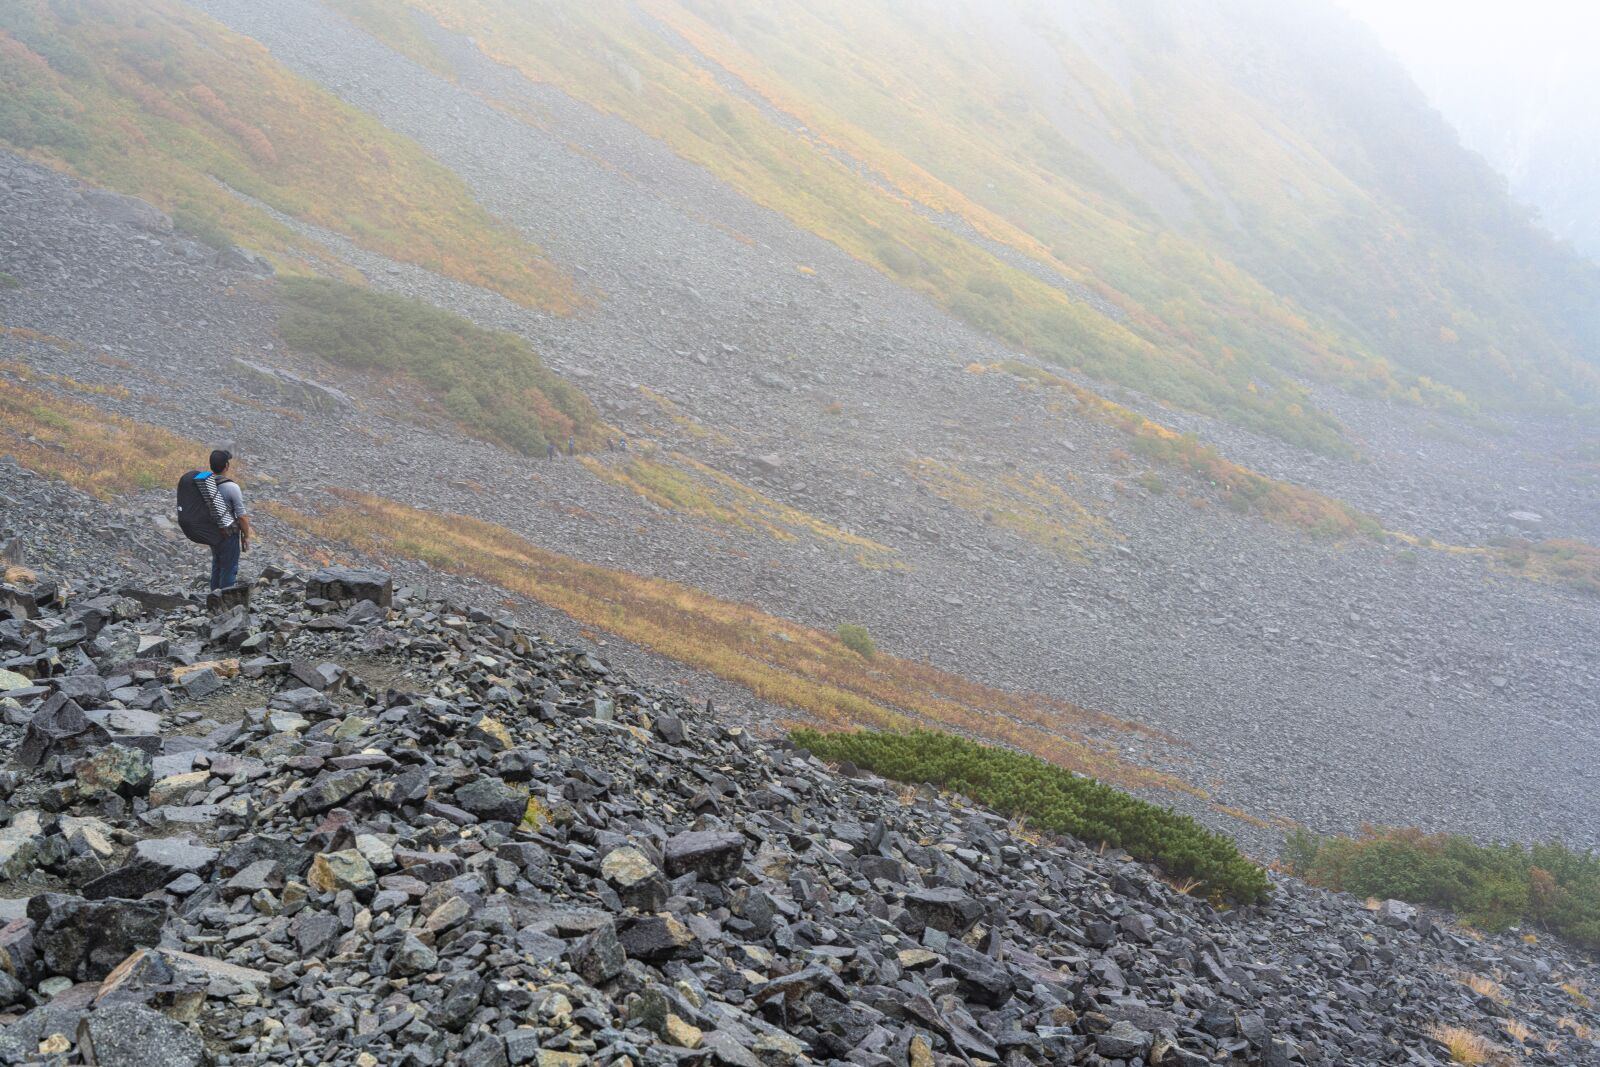 Sony a7R IV sample photo. Mountain climbing, autumn, fog photography